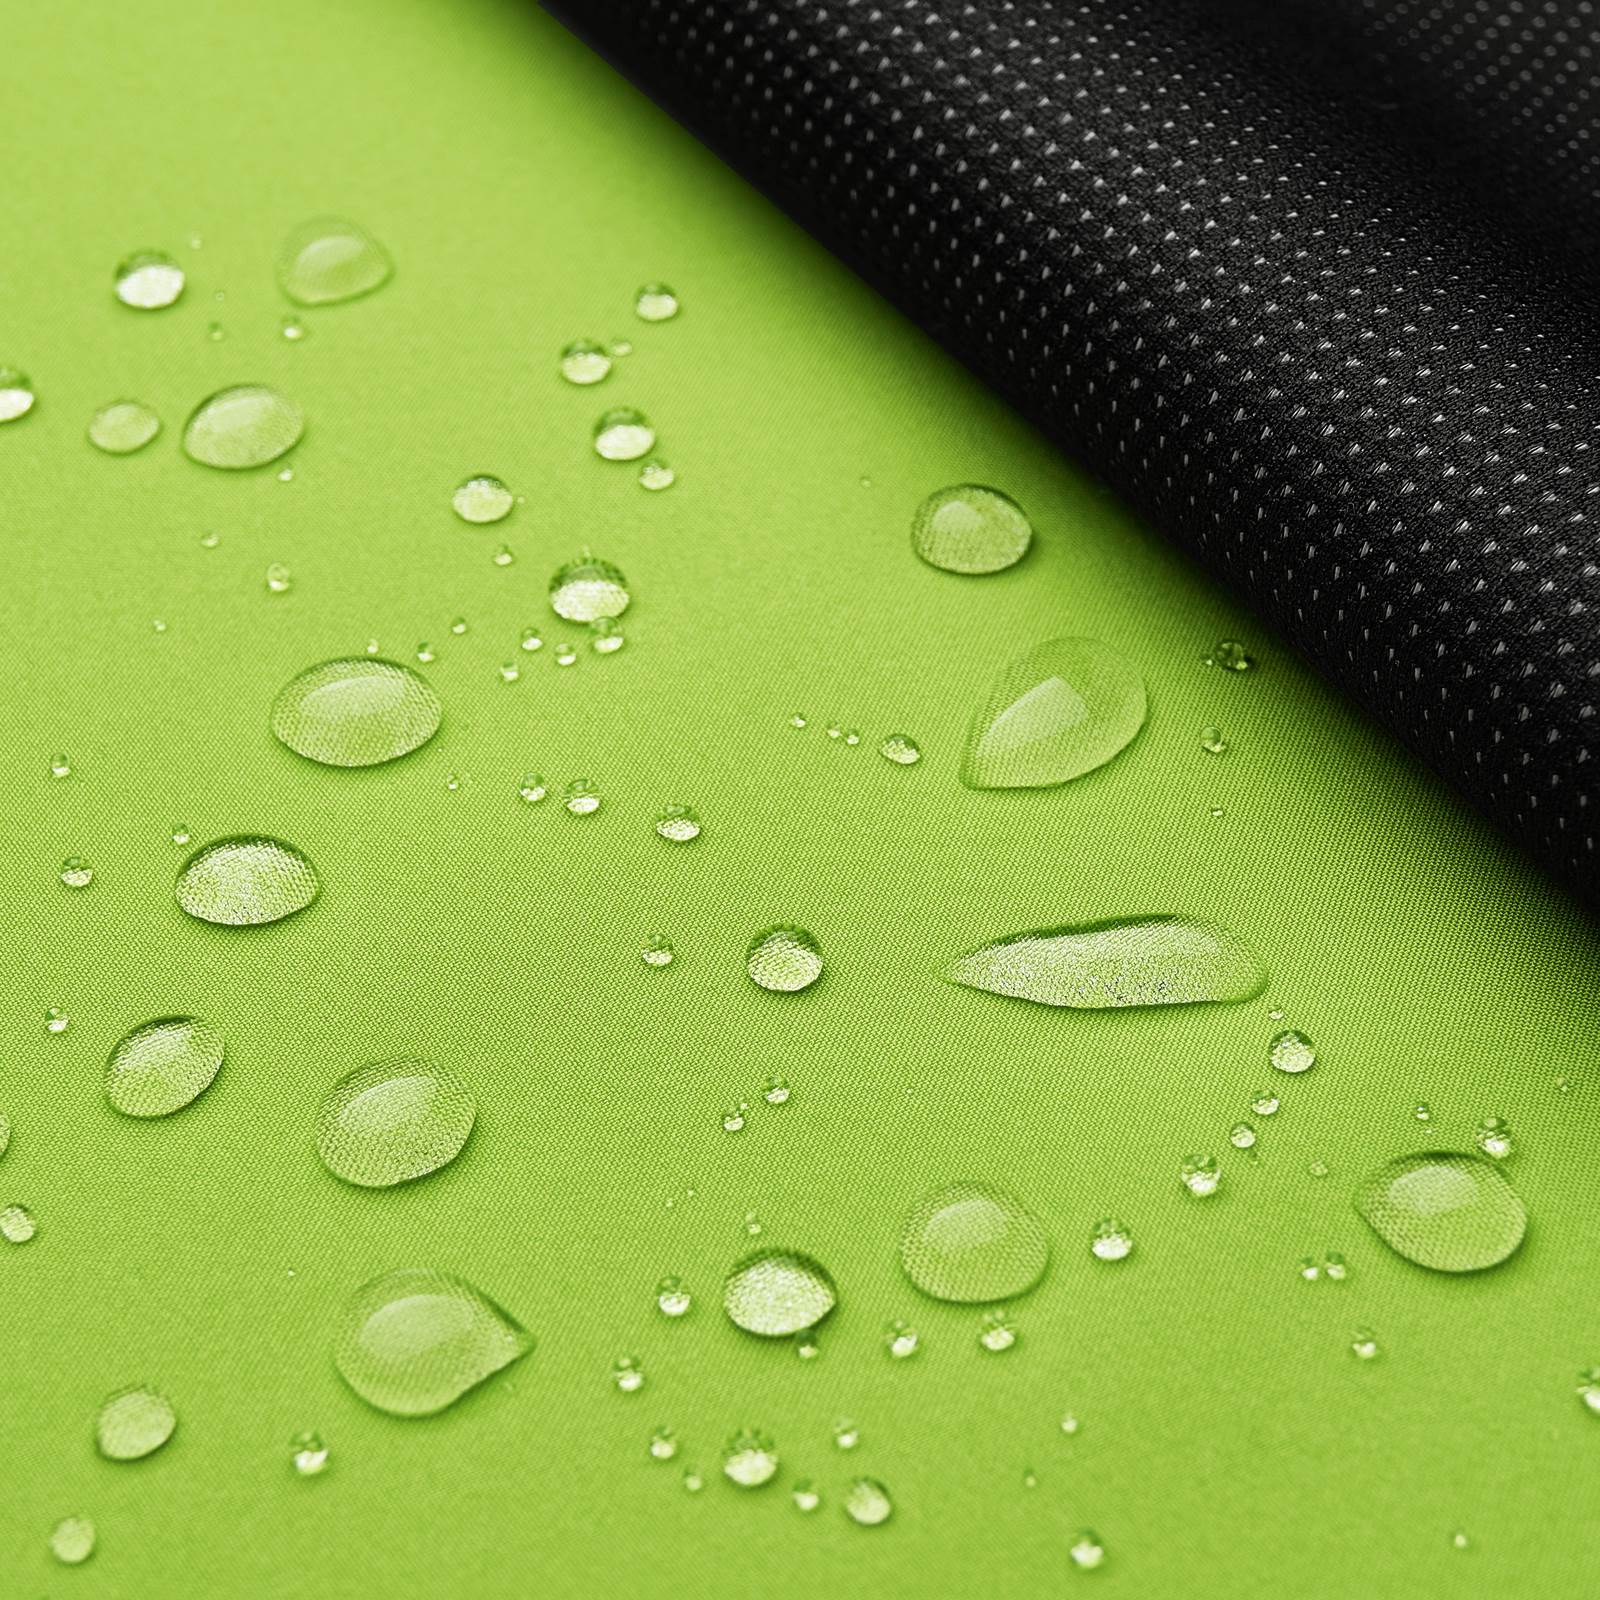 Athletik - leichter Softshell mit Membrane (limette)